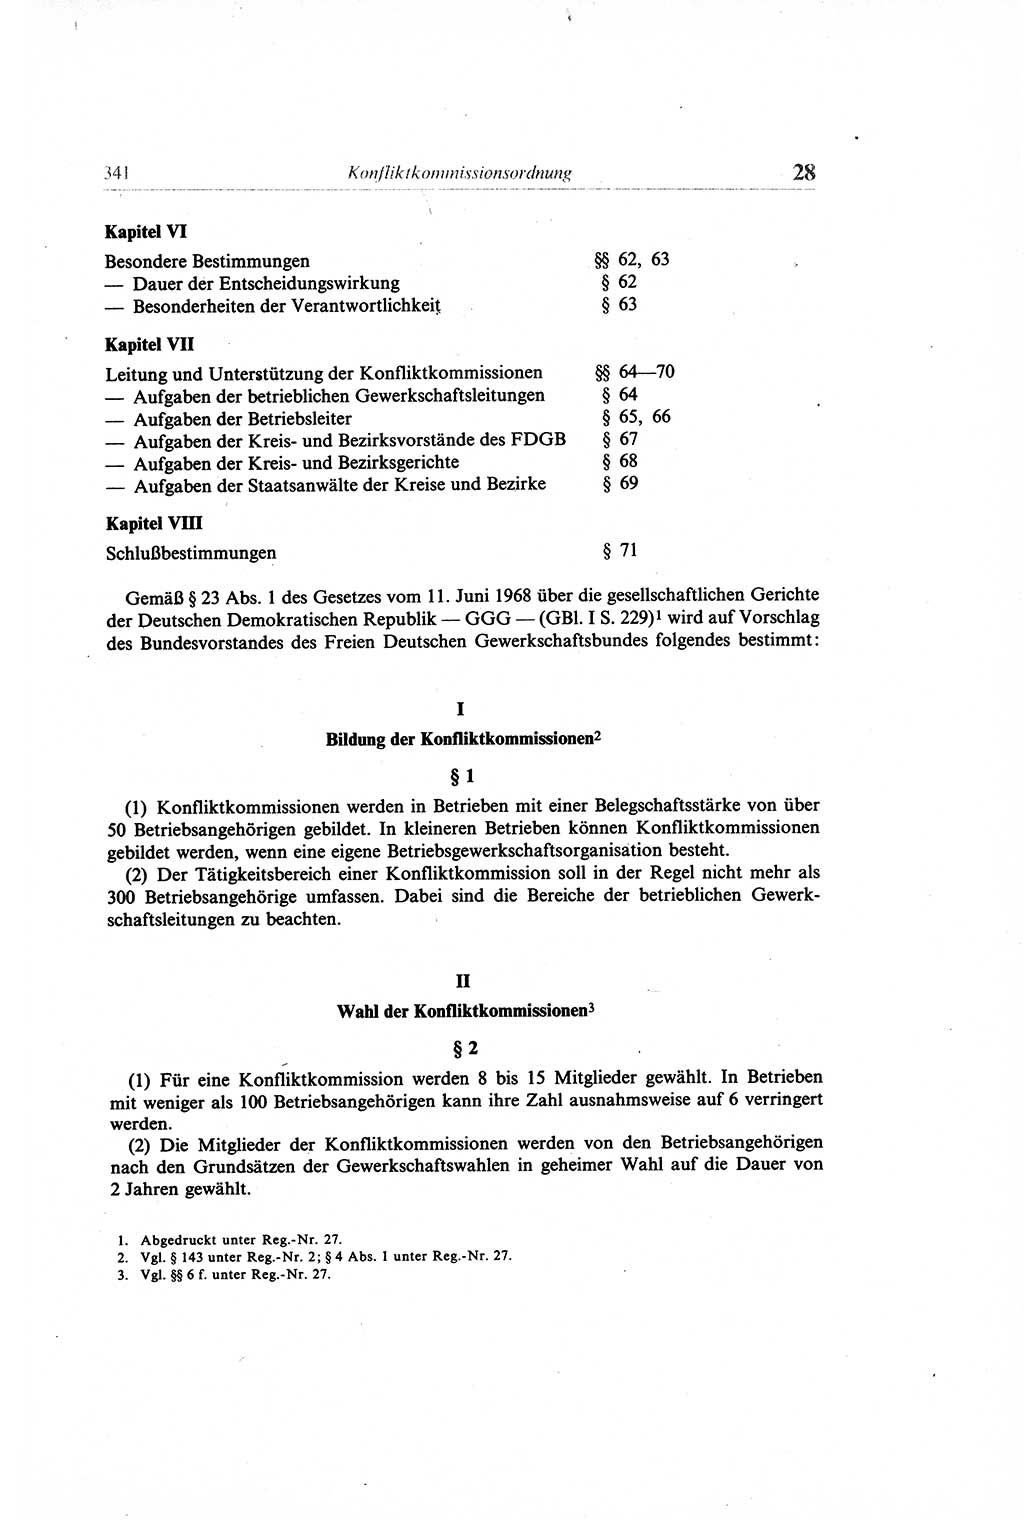 Gesetzbuch der Arbeit (GBA) und andere ausgewählte rechtliche Bestimmungen [Deutsche Demokratische Republik (DDR)] 1968, Seite 341 (GBA DDR 1968, S. 341)